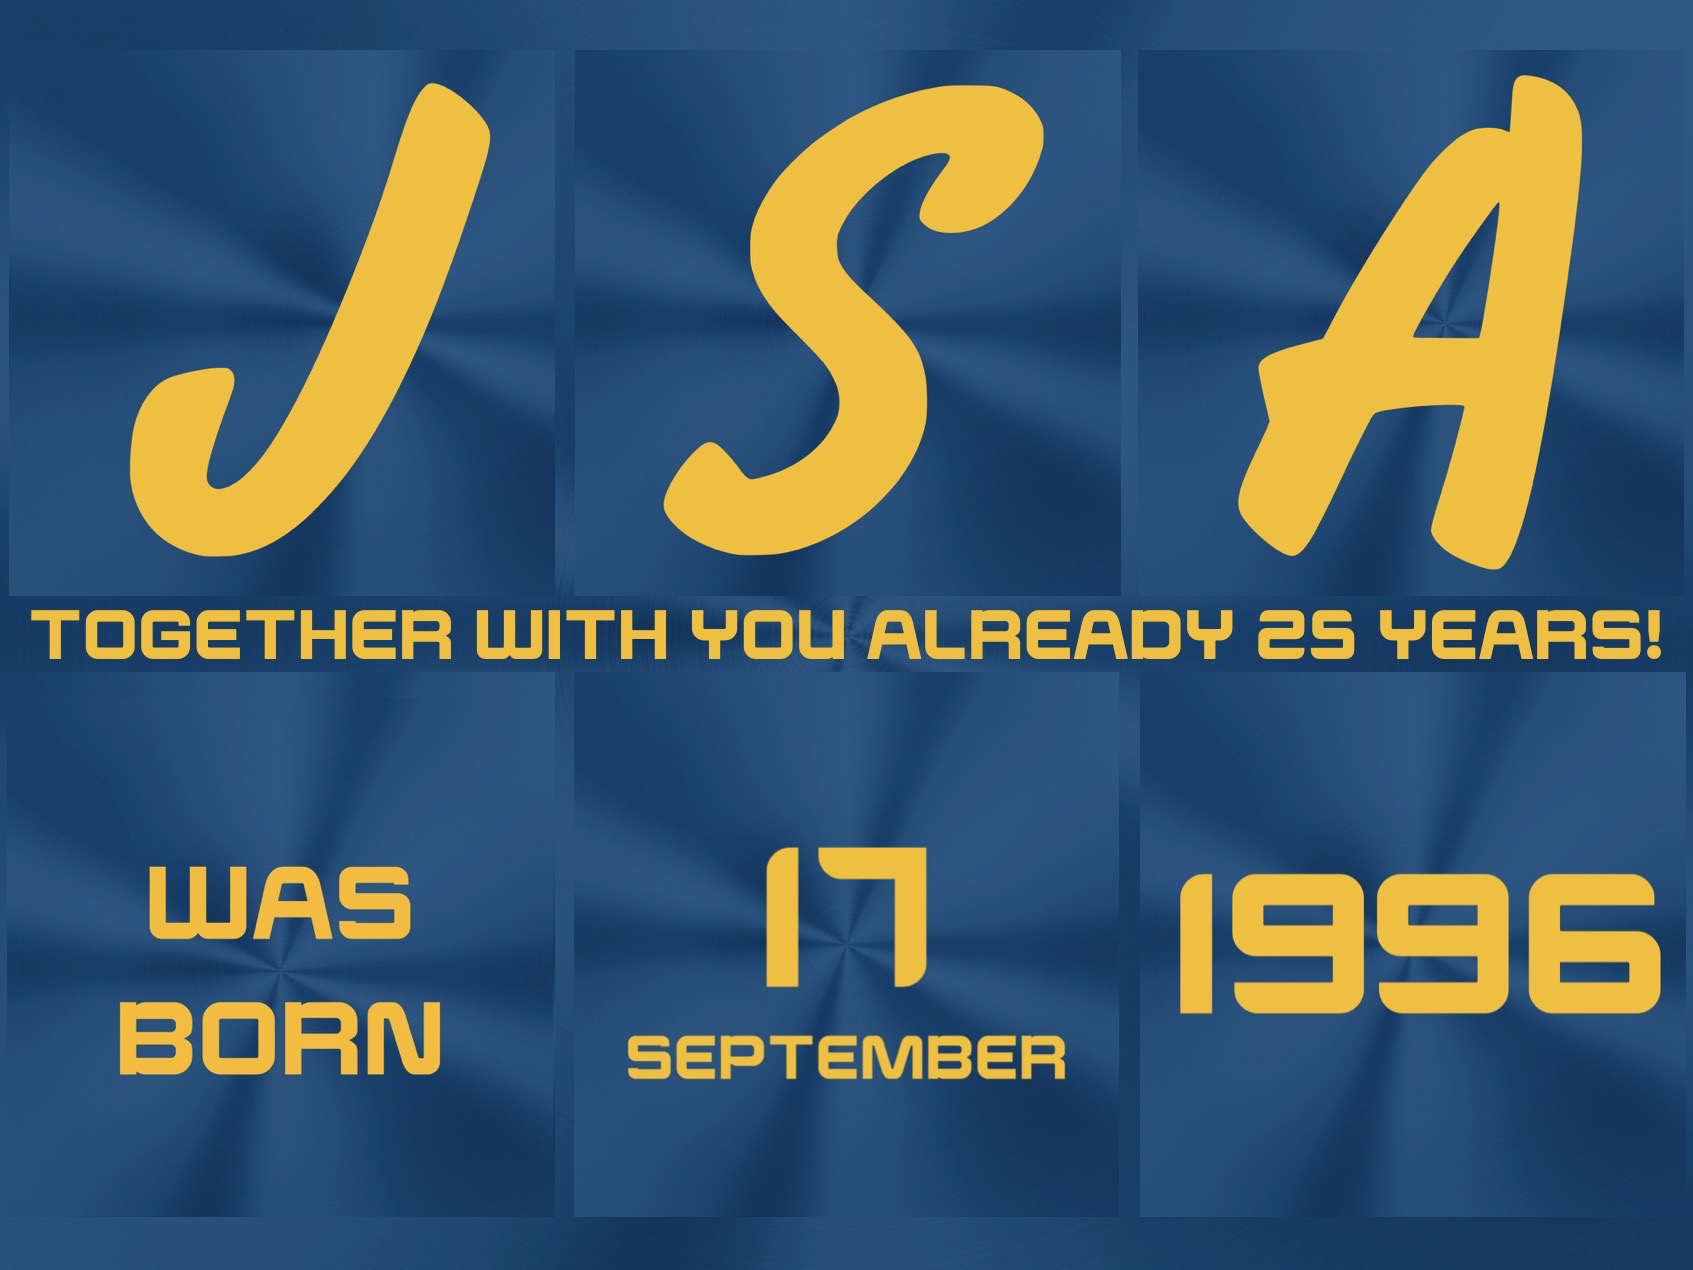 JSA anniversary - 25 years!